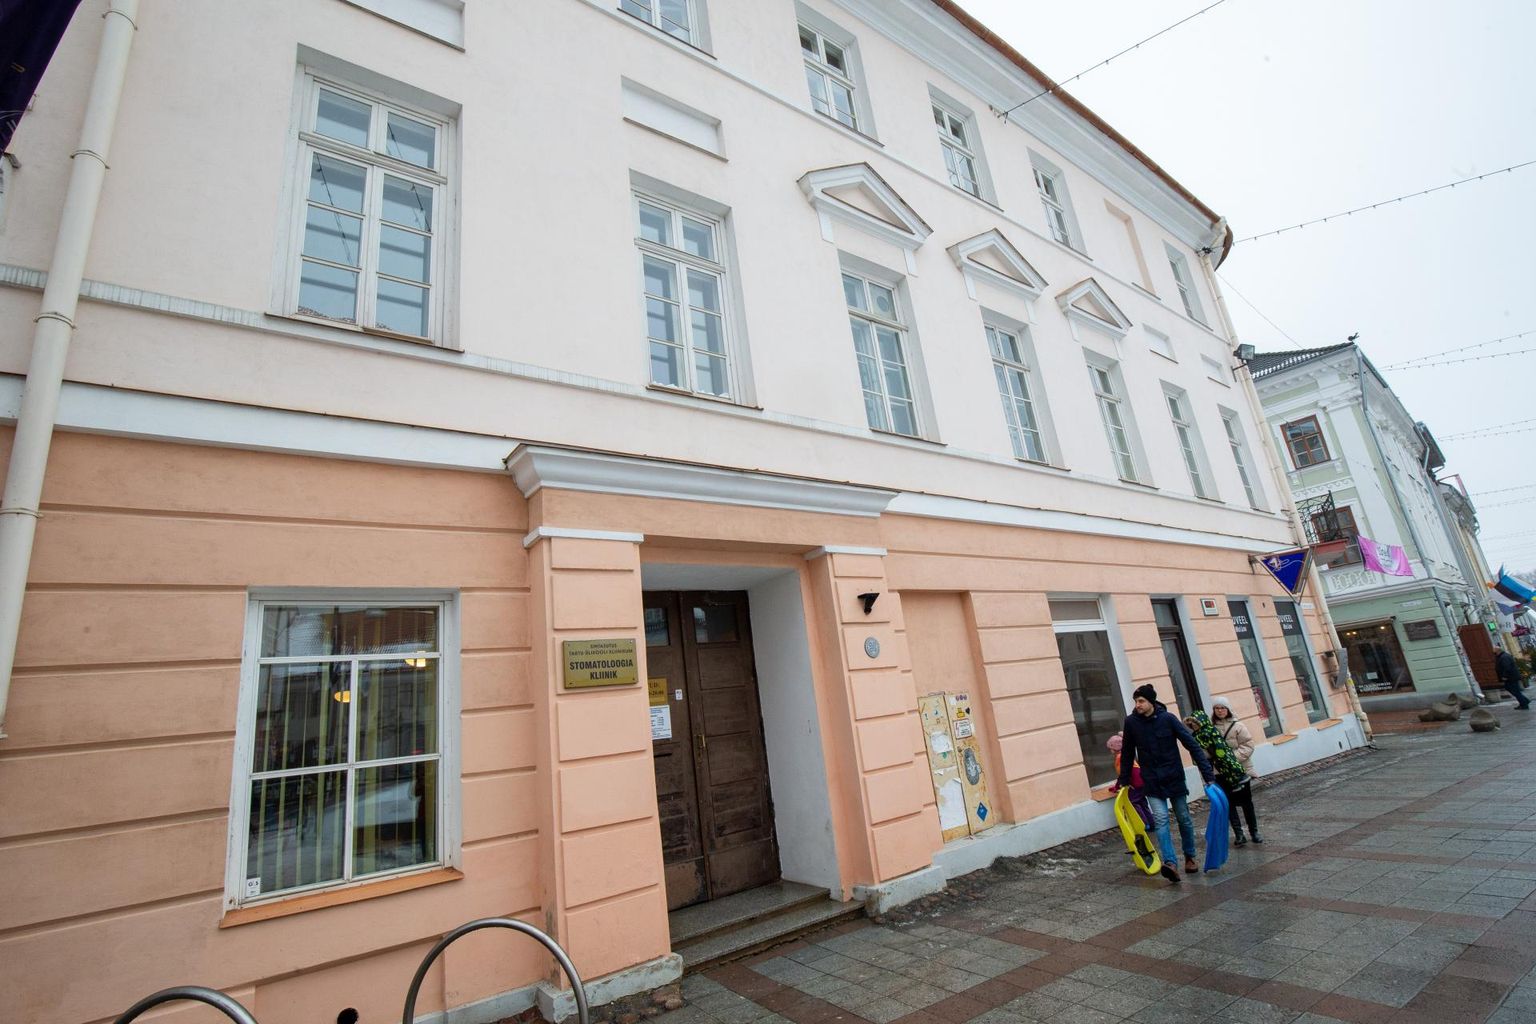 Stomatoloogiapolikliinik on Tartu linnale kuuluvas Raekoja plats 6 majas töötanud 1963. aasta novembrist.